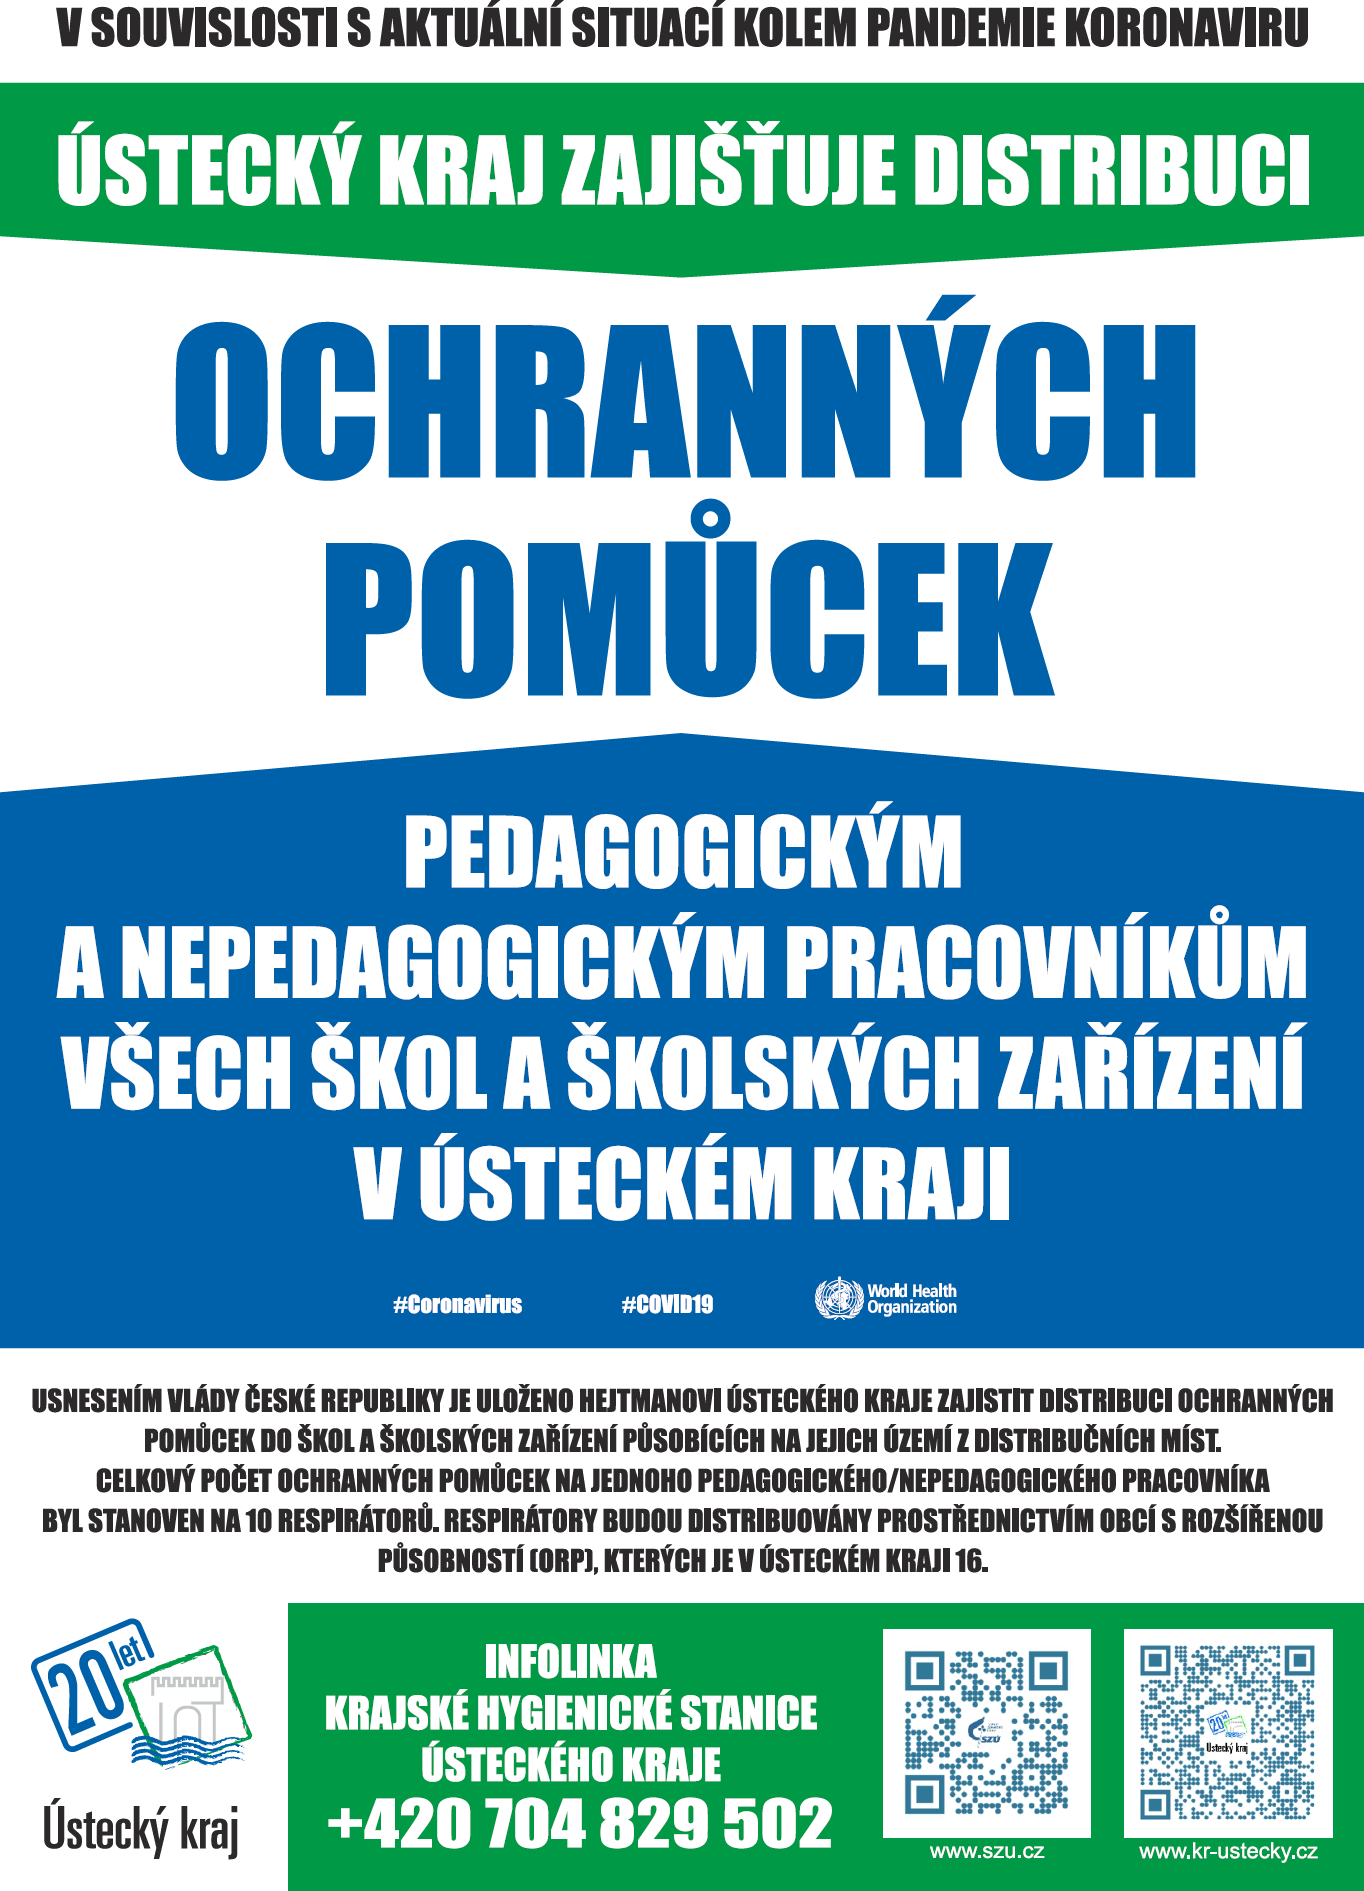 Plakát Ústeckého kraje k distribuci ochranných prostředků